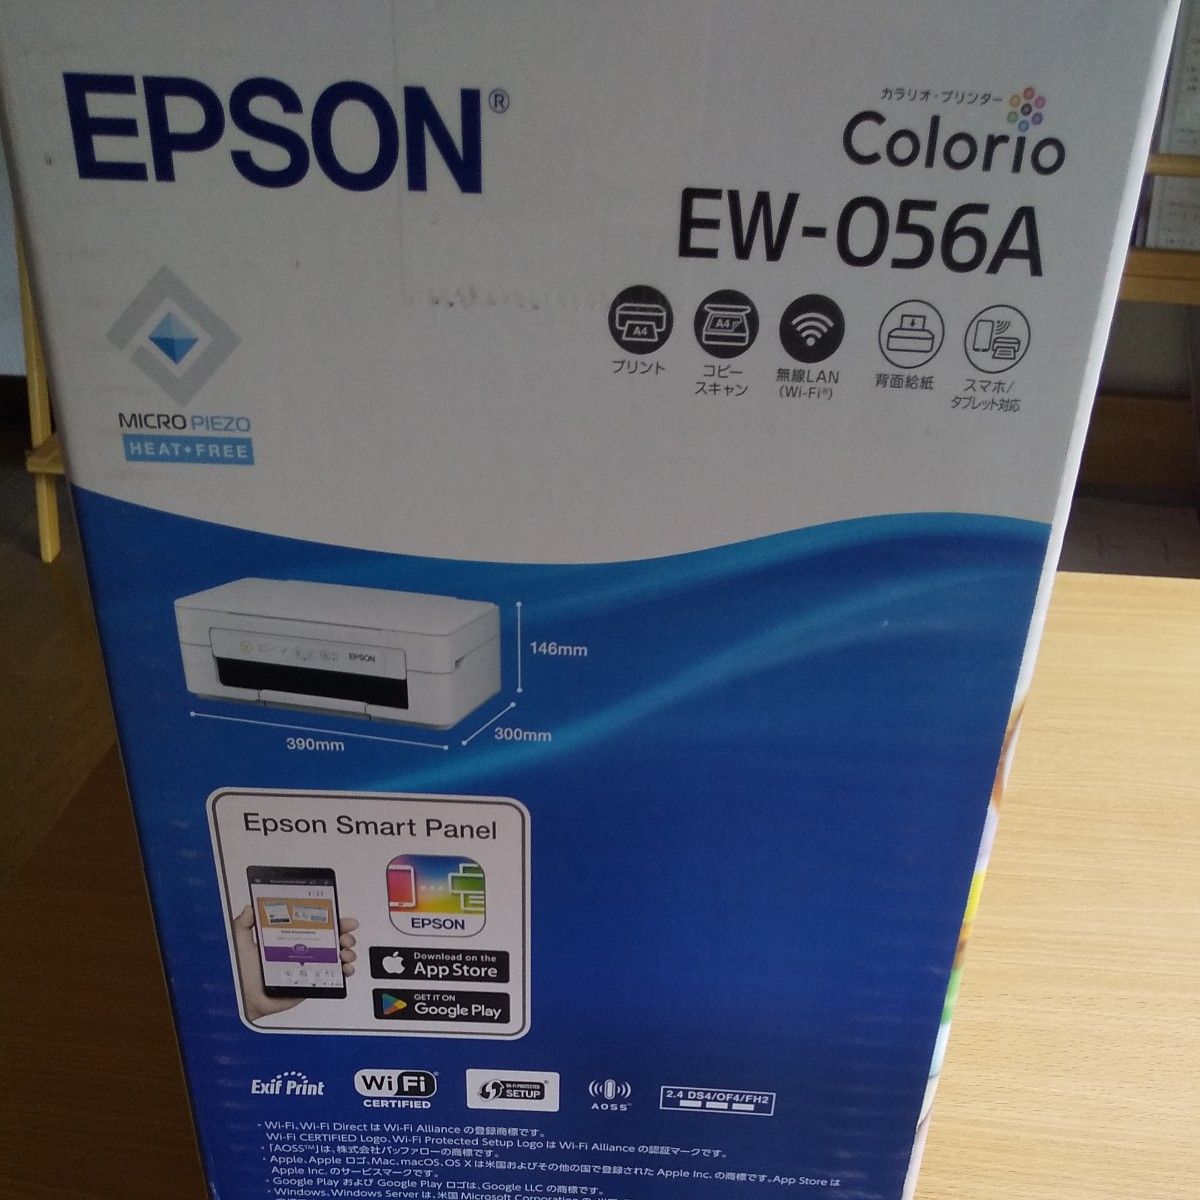 エプソン プリンター カラリオ EW-056A 新品未開封